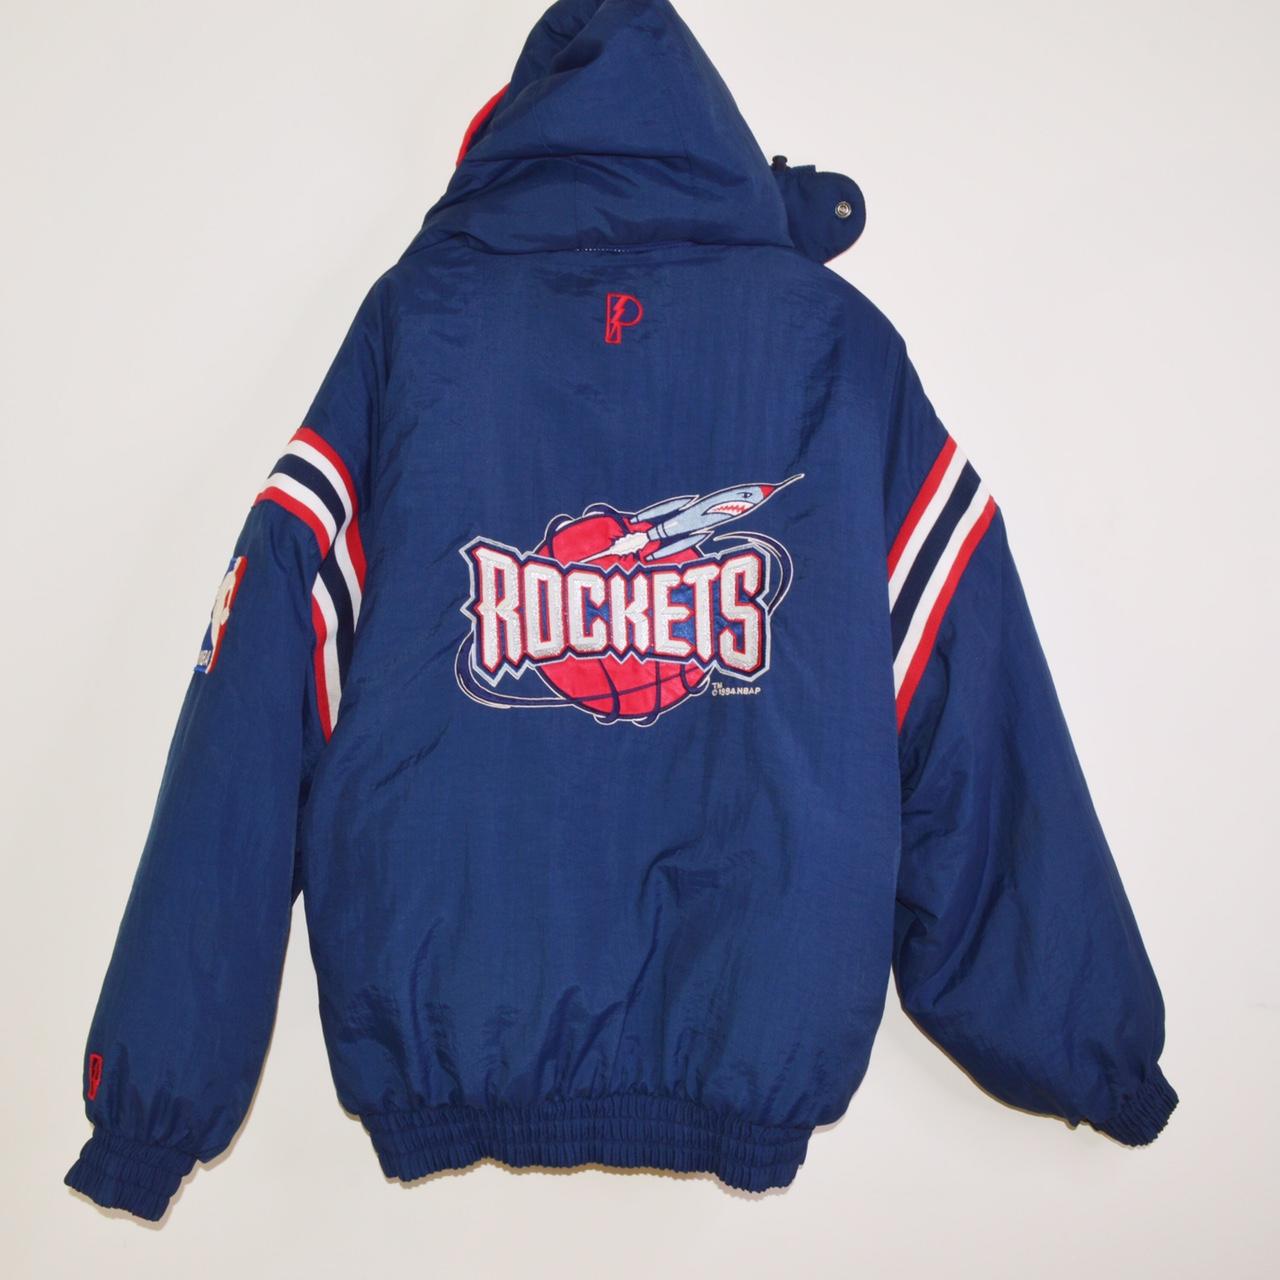 1994 Vintage Houston Rockets wind breaker jacket. - Depop